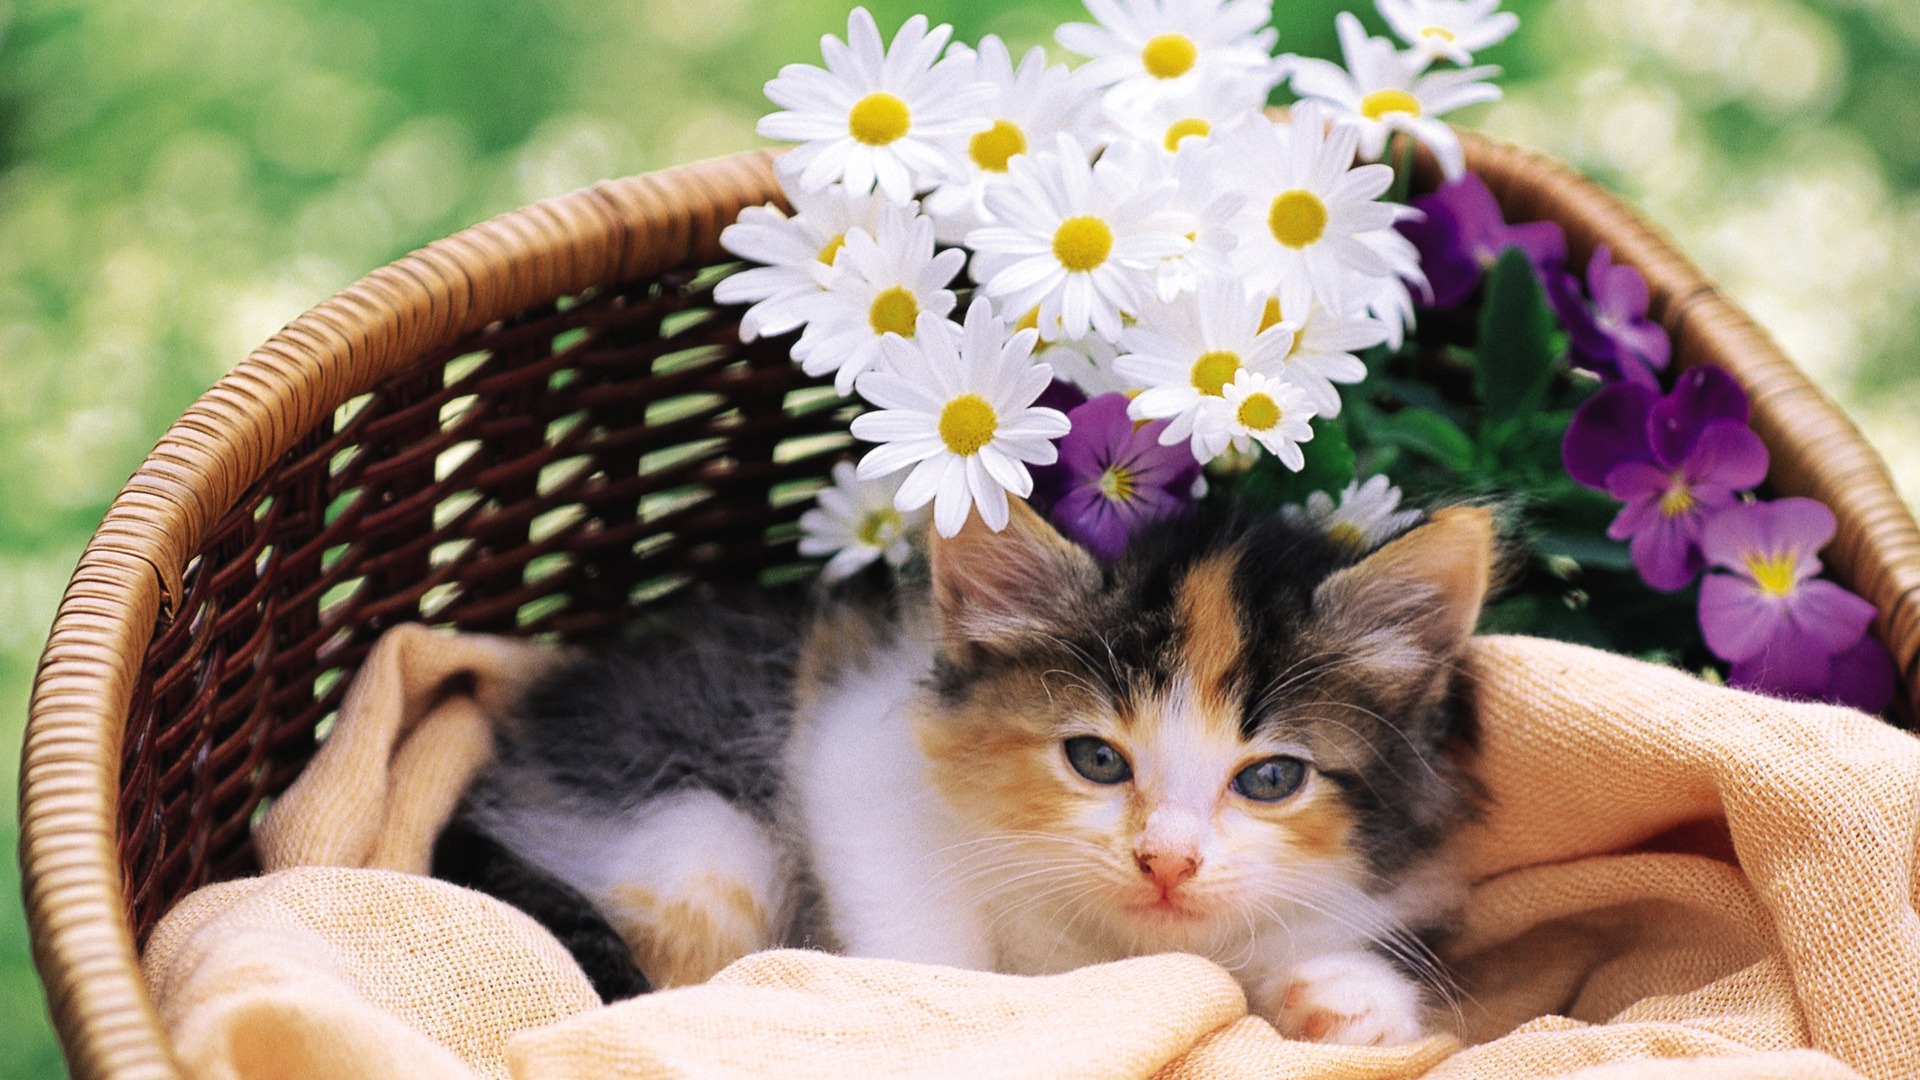 Lovely kitten in flower basket